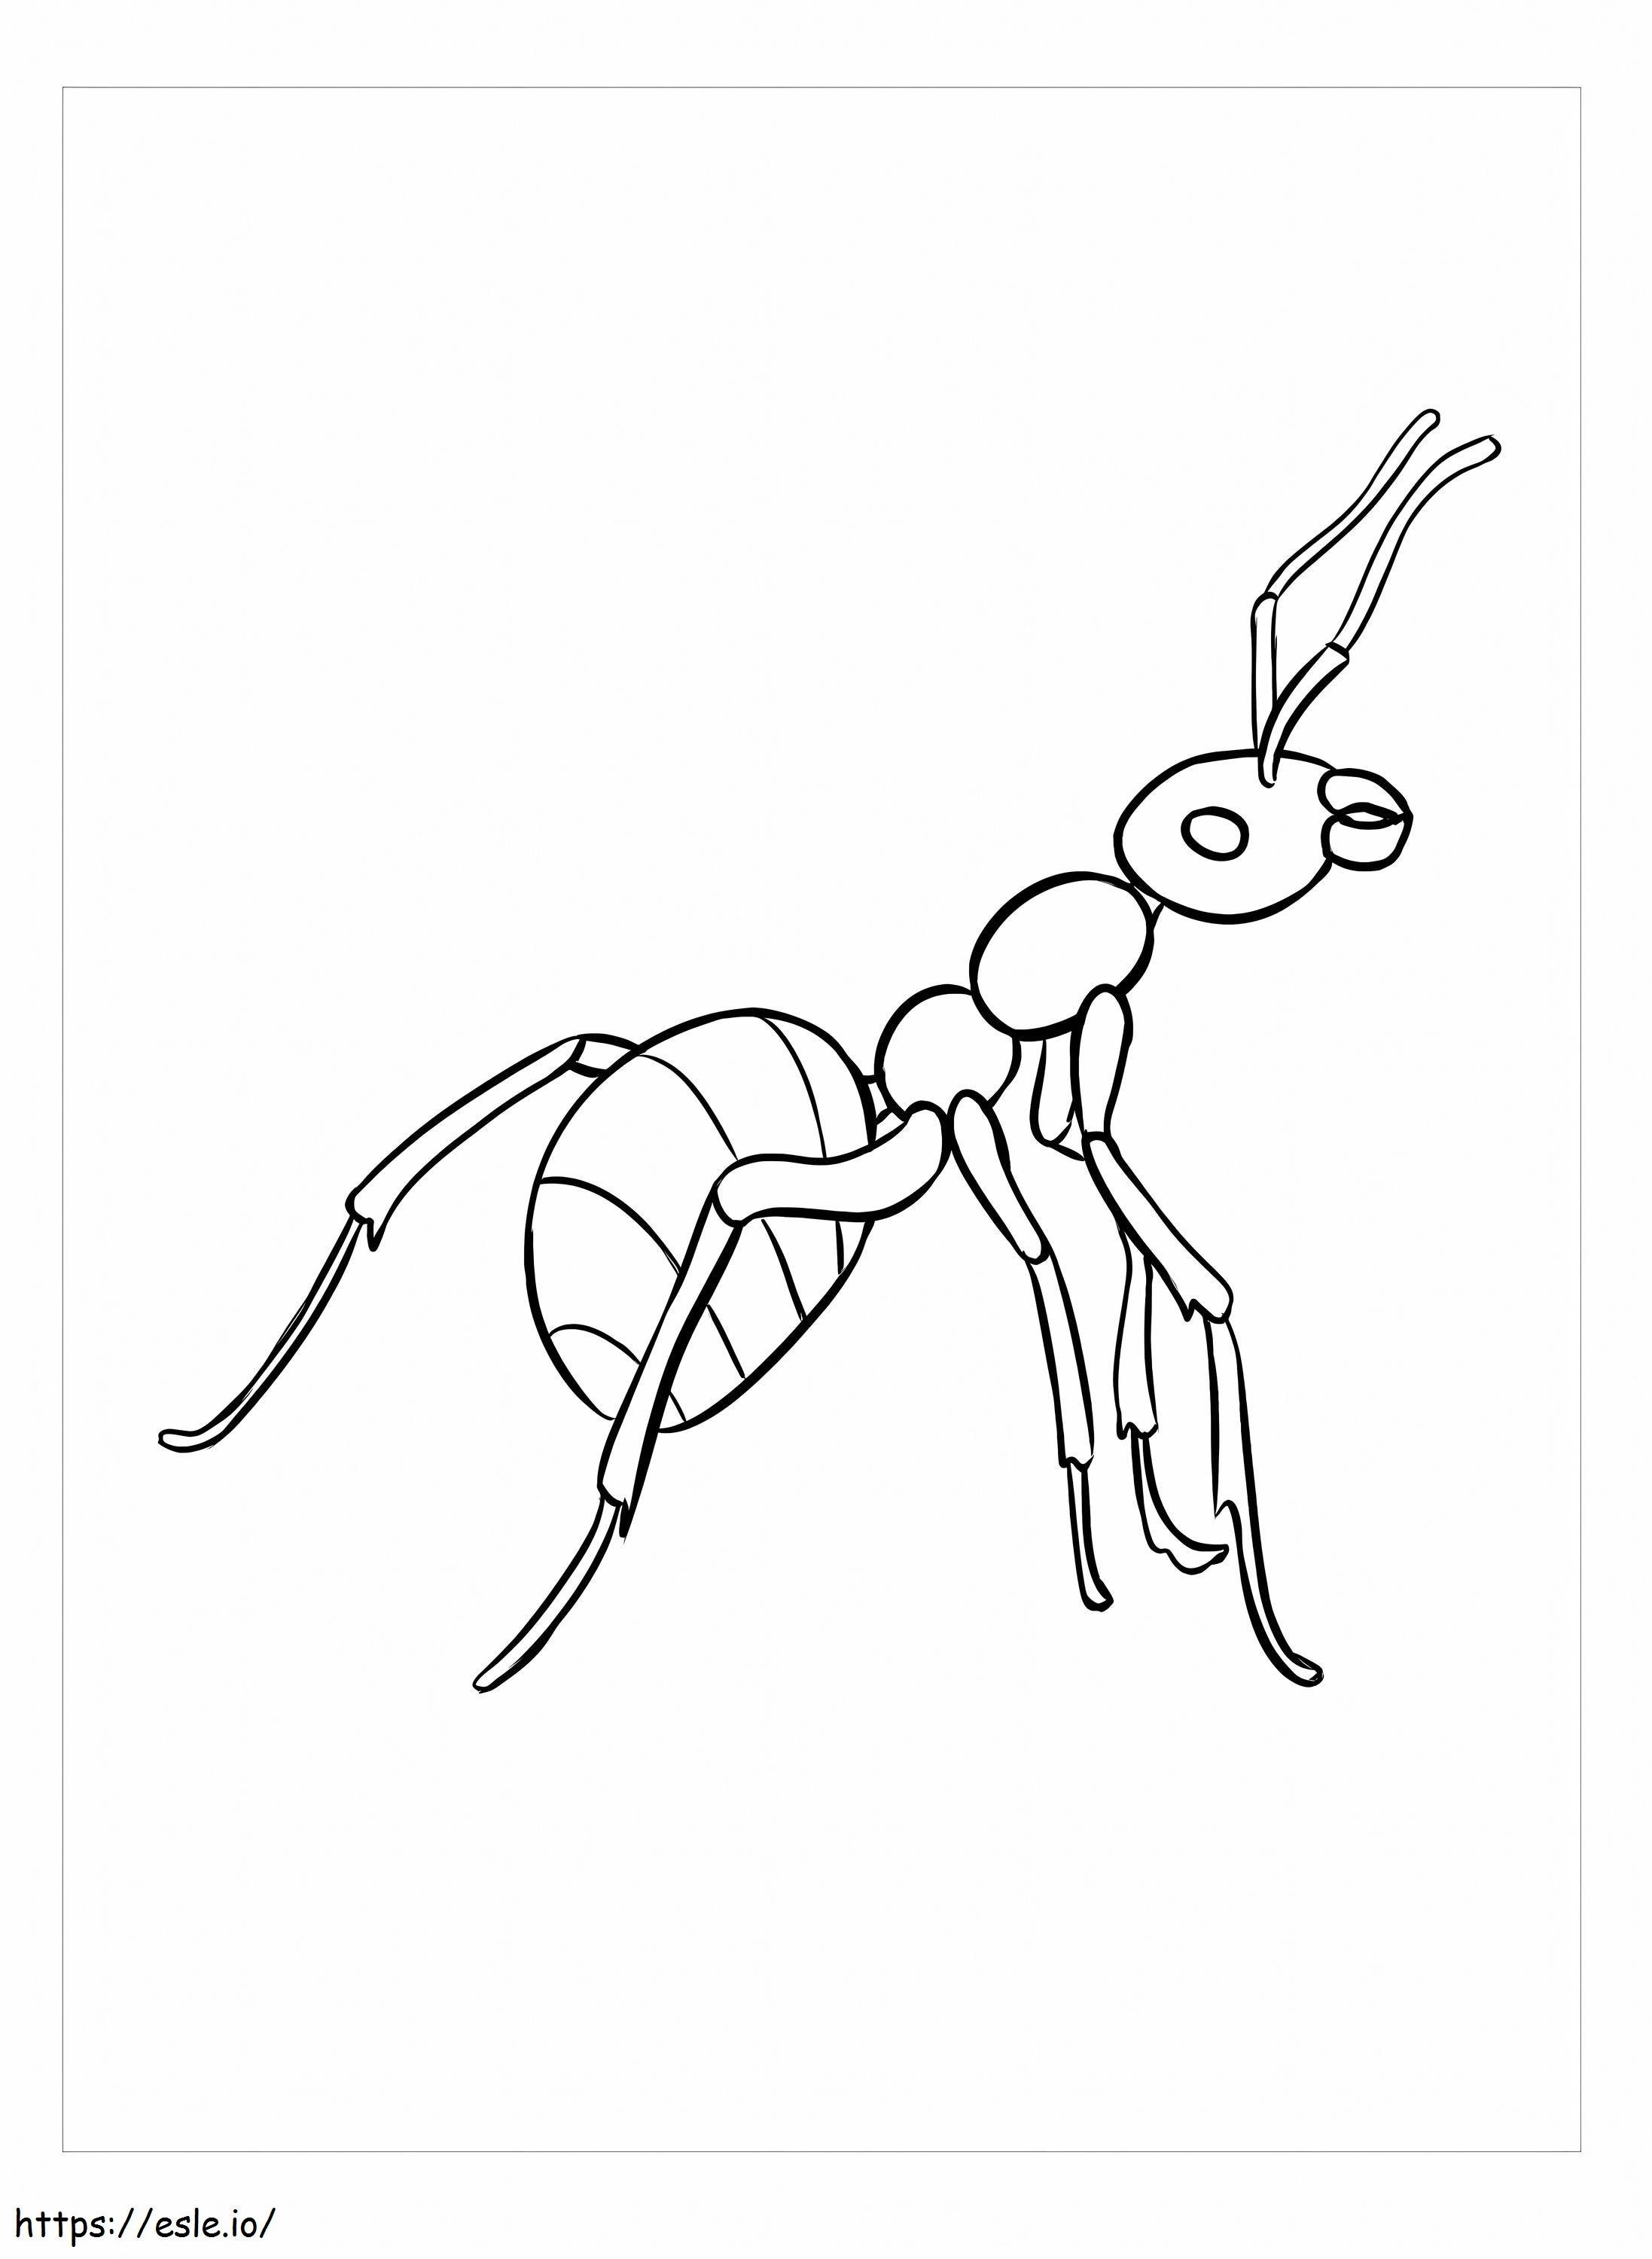 Coloriage Images gratuites de fourmis à imprimer dessin